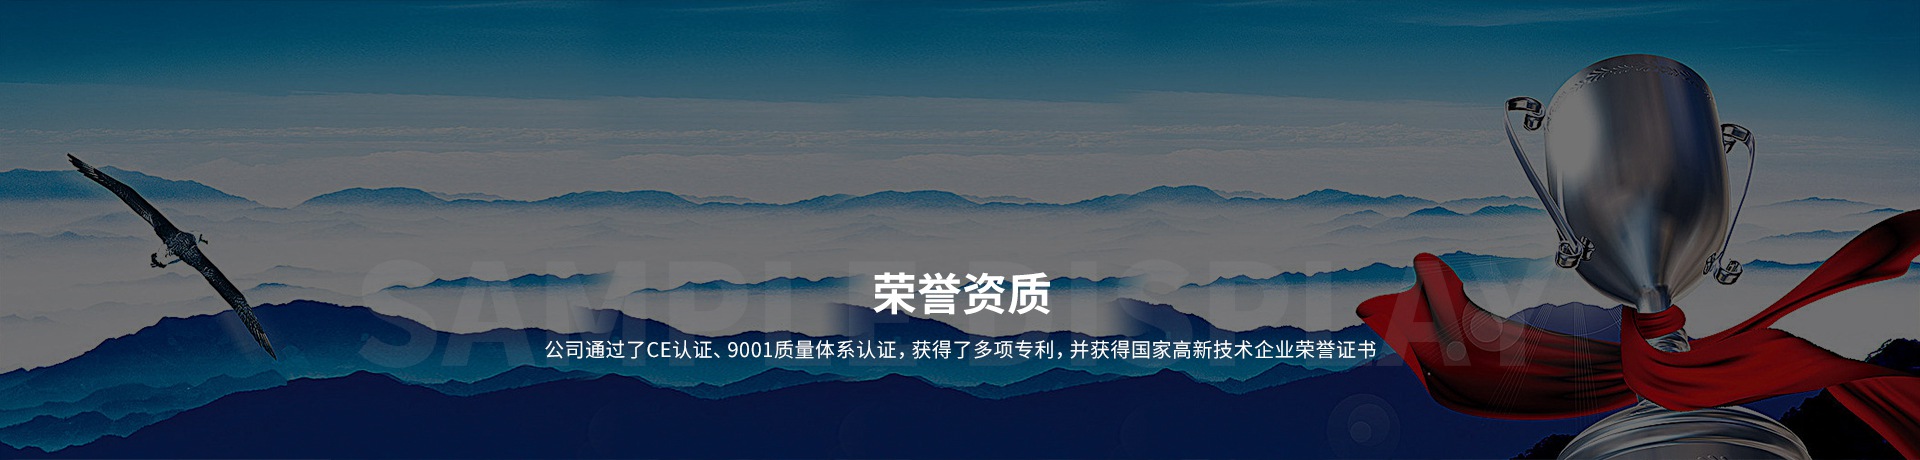 9001认证-中文